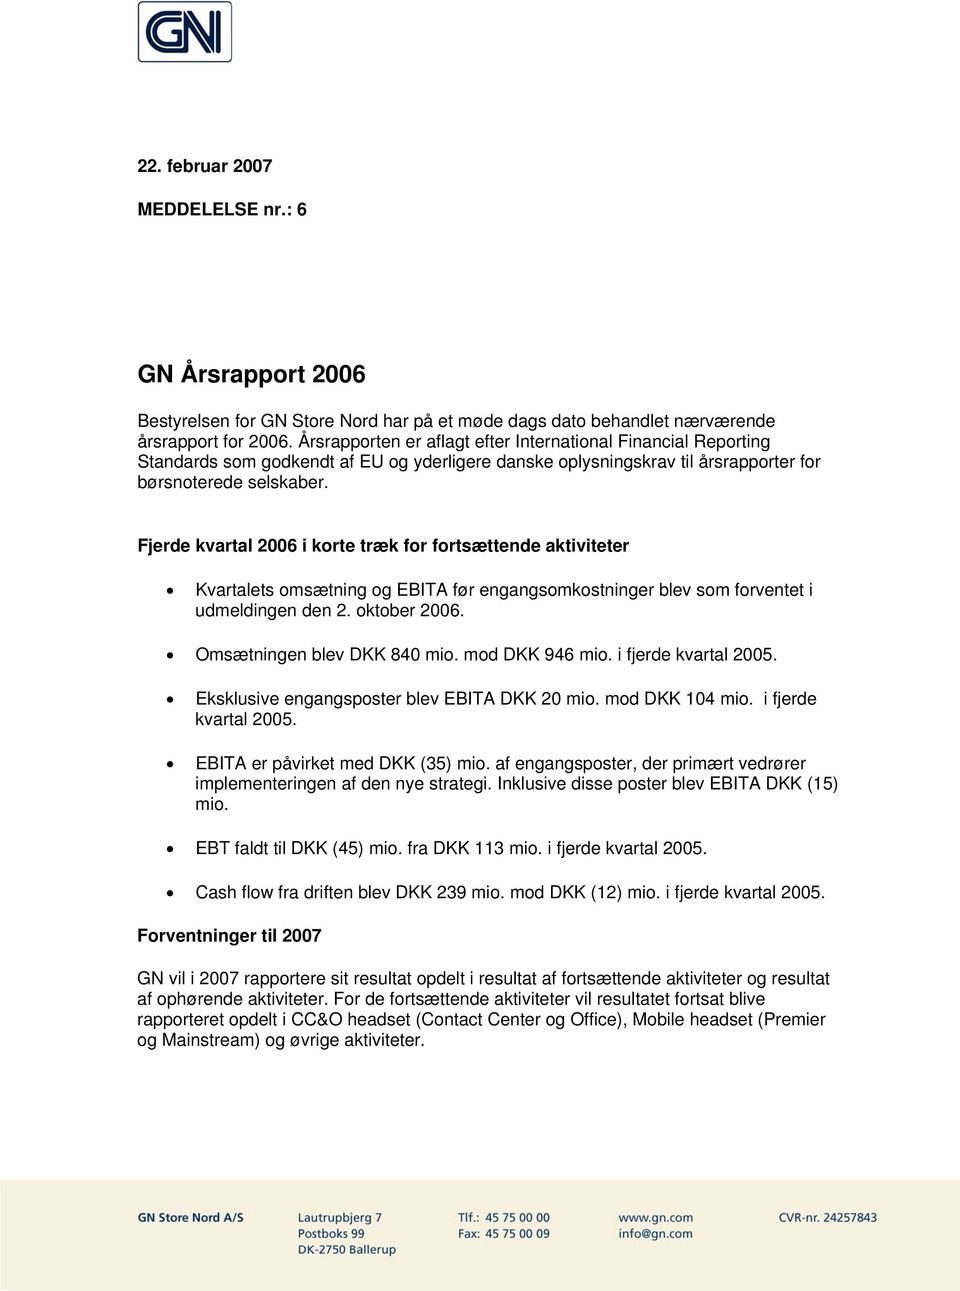 Fjerde kvartal 2006 i korte træk for fortsættende aktiviteter Kvartalets omsætning og EBITA før engangsomkostninger blev som forventet i udmeldingen den 2. oktober 2006. Omsætningen blev DKK 840 mio.